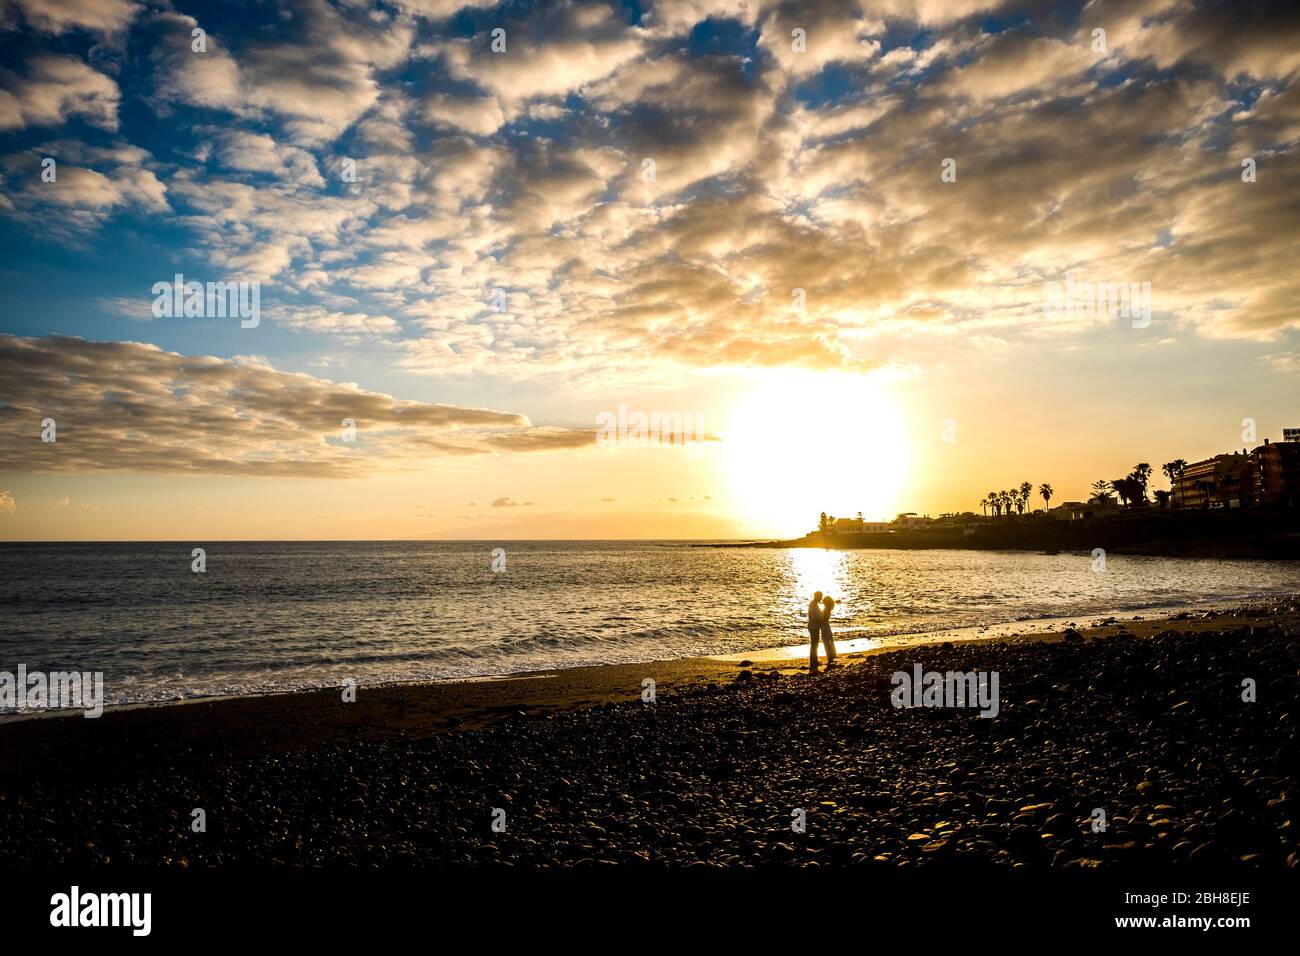 Liebespaar küssen mit goldenem Sonnenuntergang im Hintergrund. Strand und Meereswellen landschaftlich schöner Ort auf Teneriffa. Romantik und Zärtlichkeit Konzept für Mann und Frau im Urlaub Stockfoto